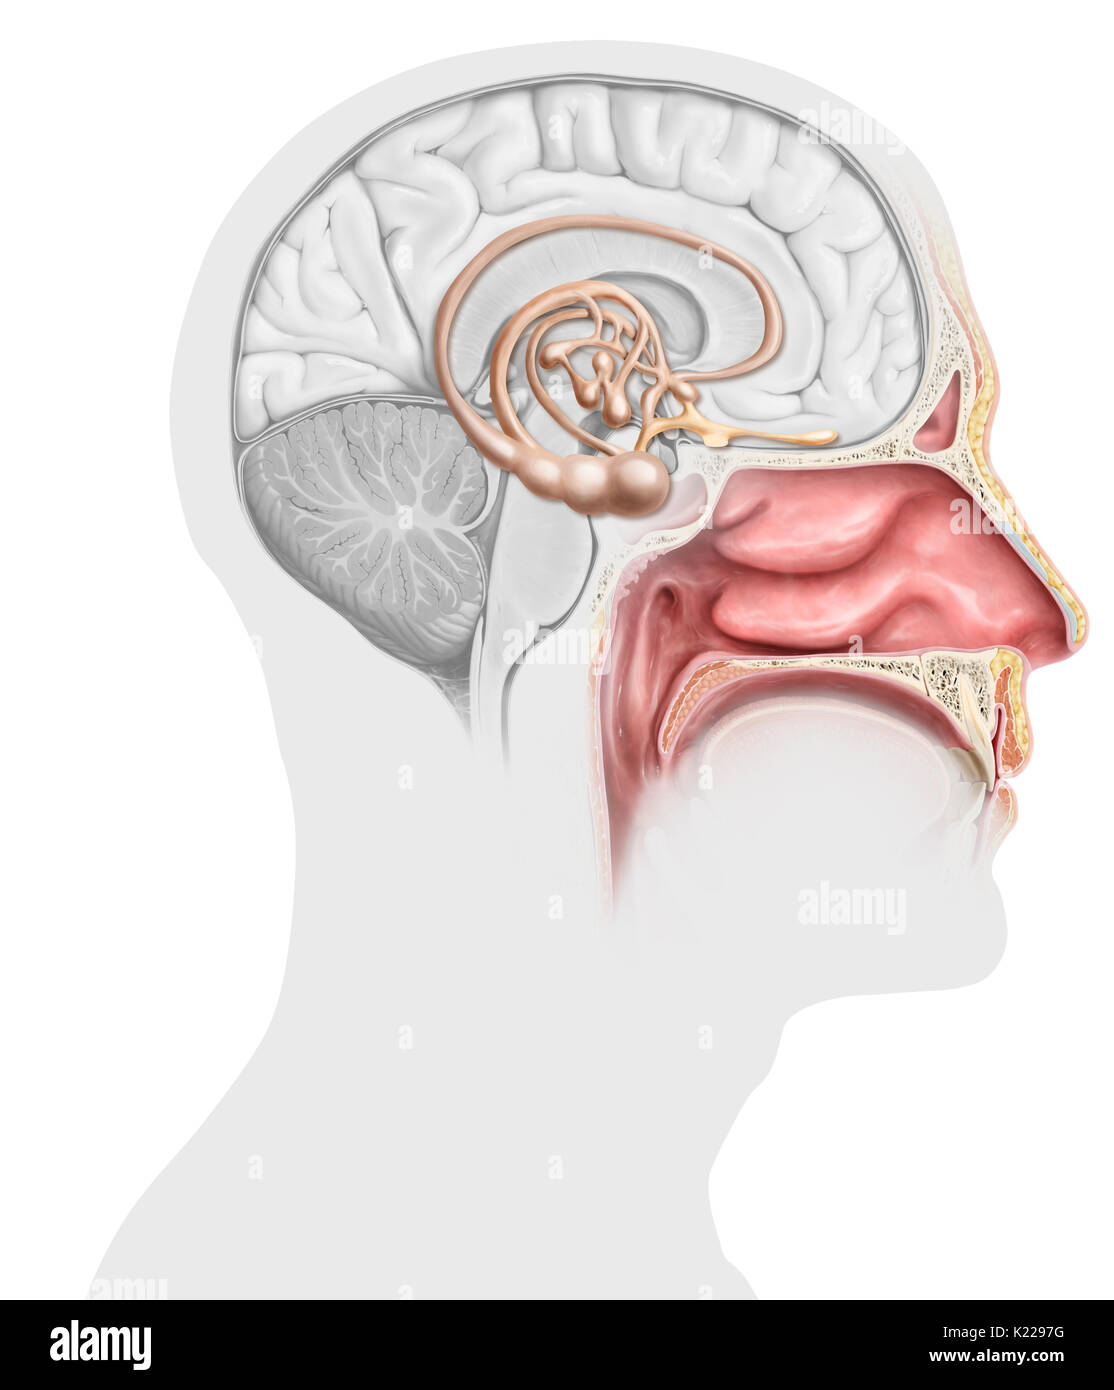 Chaque cavité nasale comprend un épithélium olfactif, dont la stimulation par les molécules odorantes génère des signaux nerveux. Ceux-ci sont acheminés vers le cerveau, où les odeurs sont analysées et associés avec les émotions et souvenirs. Banque D'Images